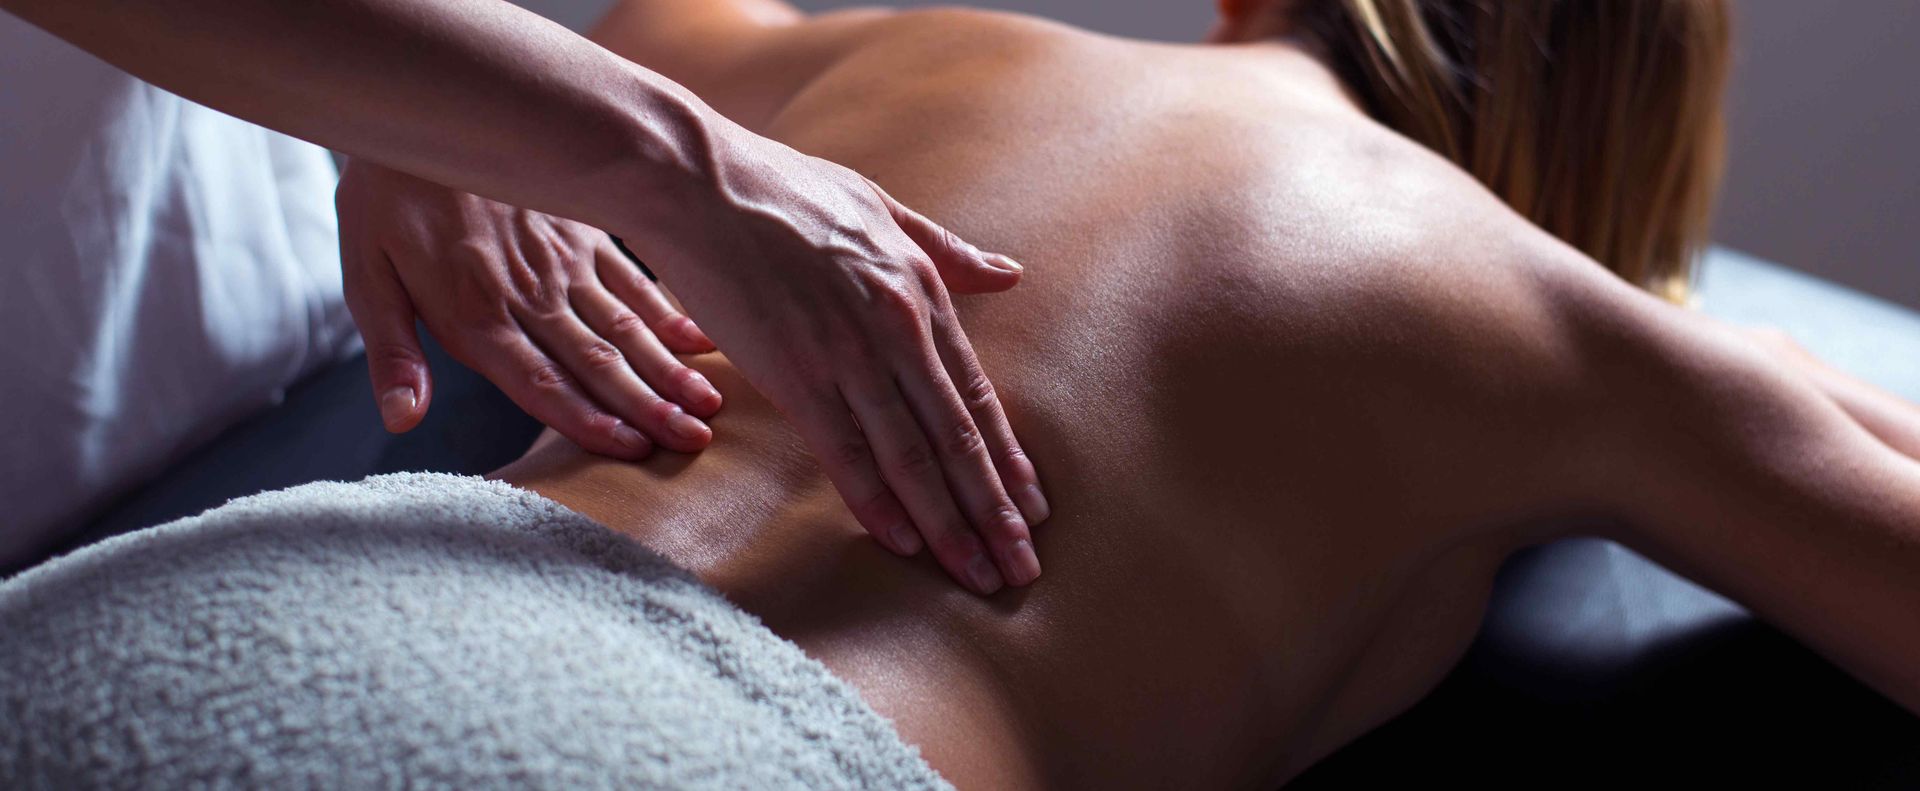 Massage Therapist massaging lower back